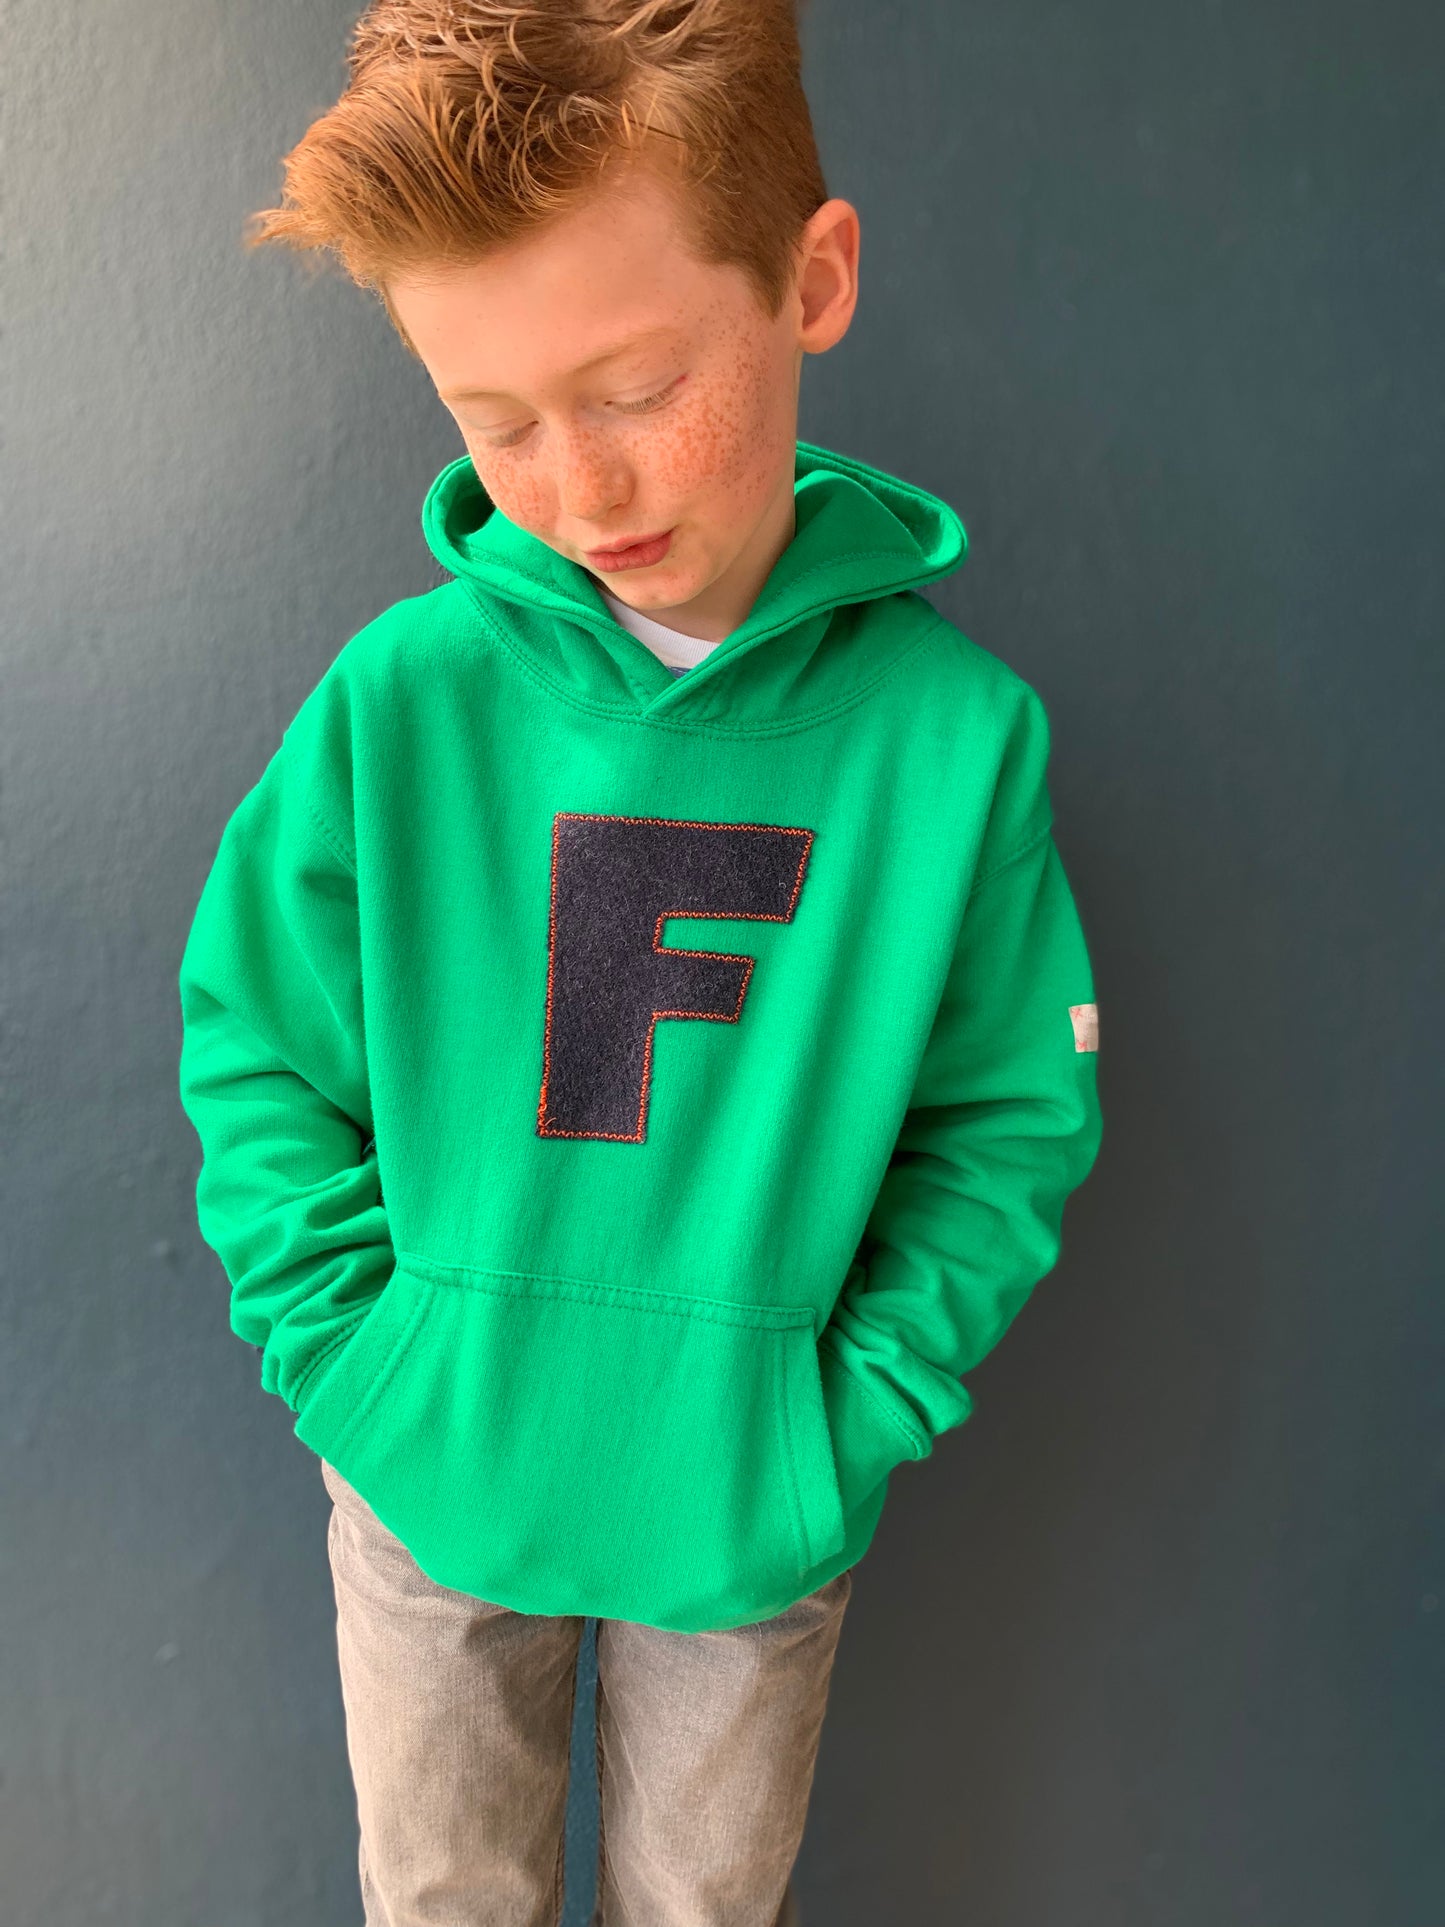 personalised hoodies, boys hoodies, girls hoodie, personalised gifts, design your own hoody - green personalised initial hoodies